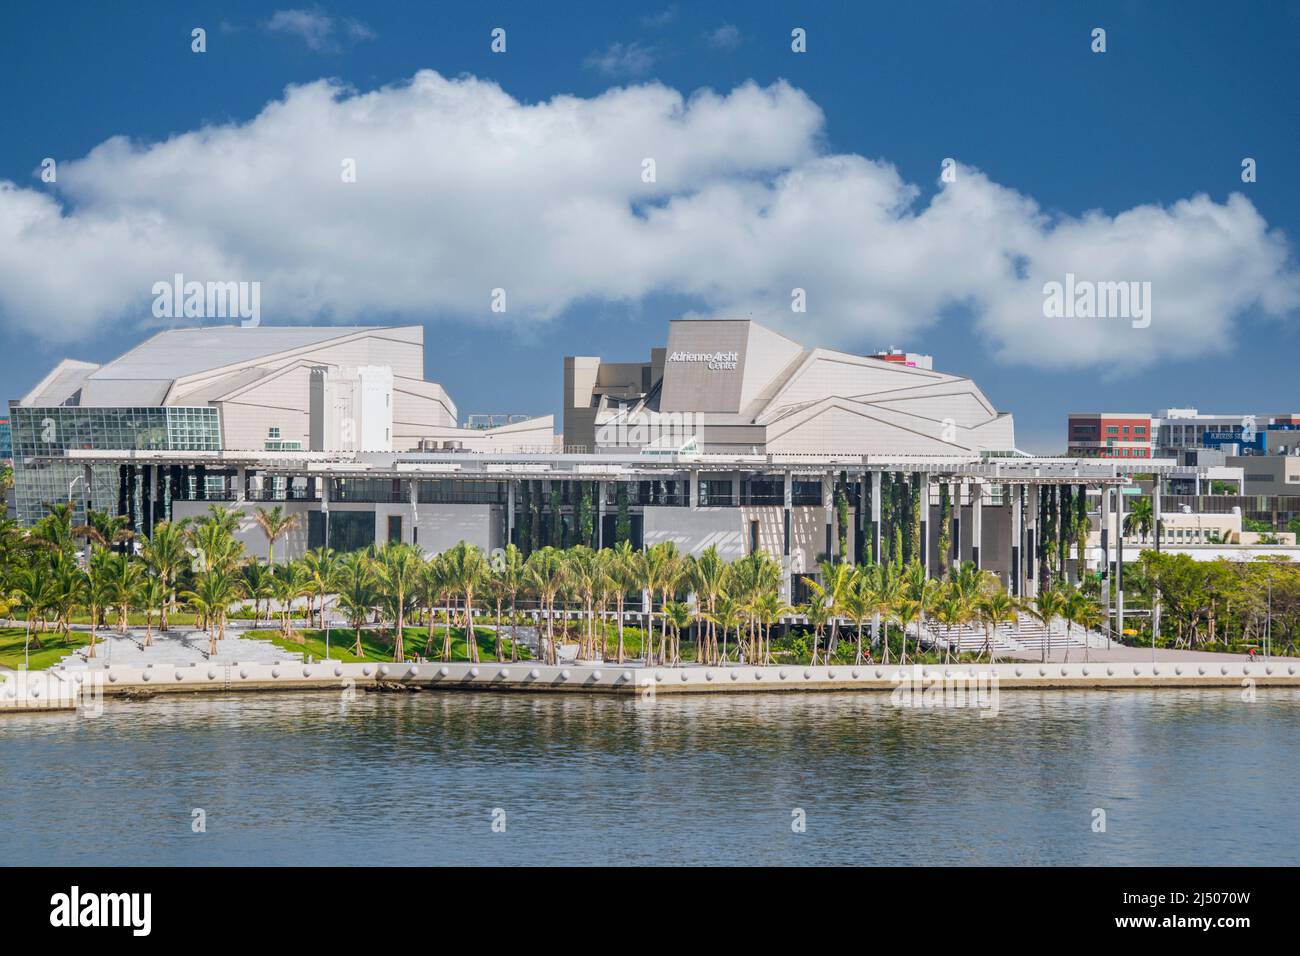 Das Adrienne Arsht Center for the Performing Arts of Miami-Dade County am Wasser vom Deck eines Kreuzfahrtschiffs aus gesehen, das von Miami, Florida, abfährt. Stockfoto